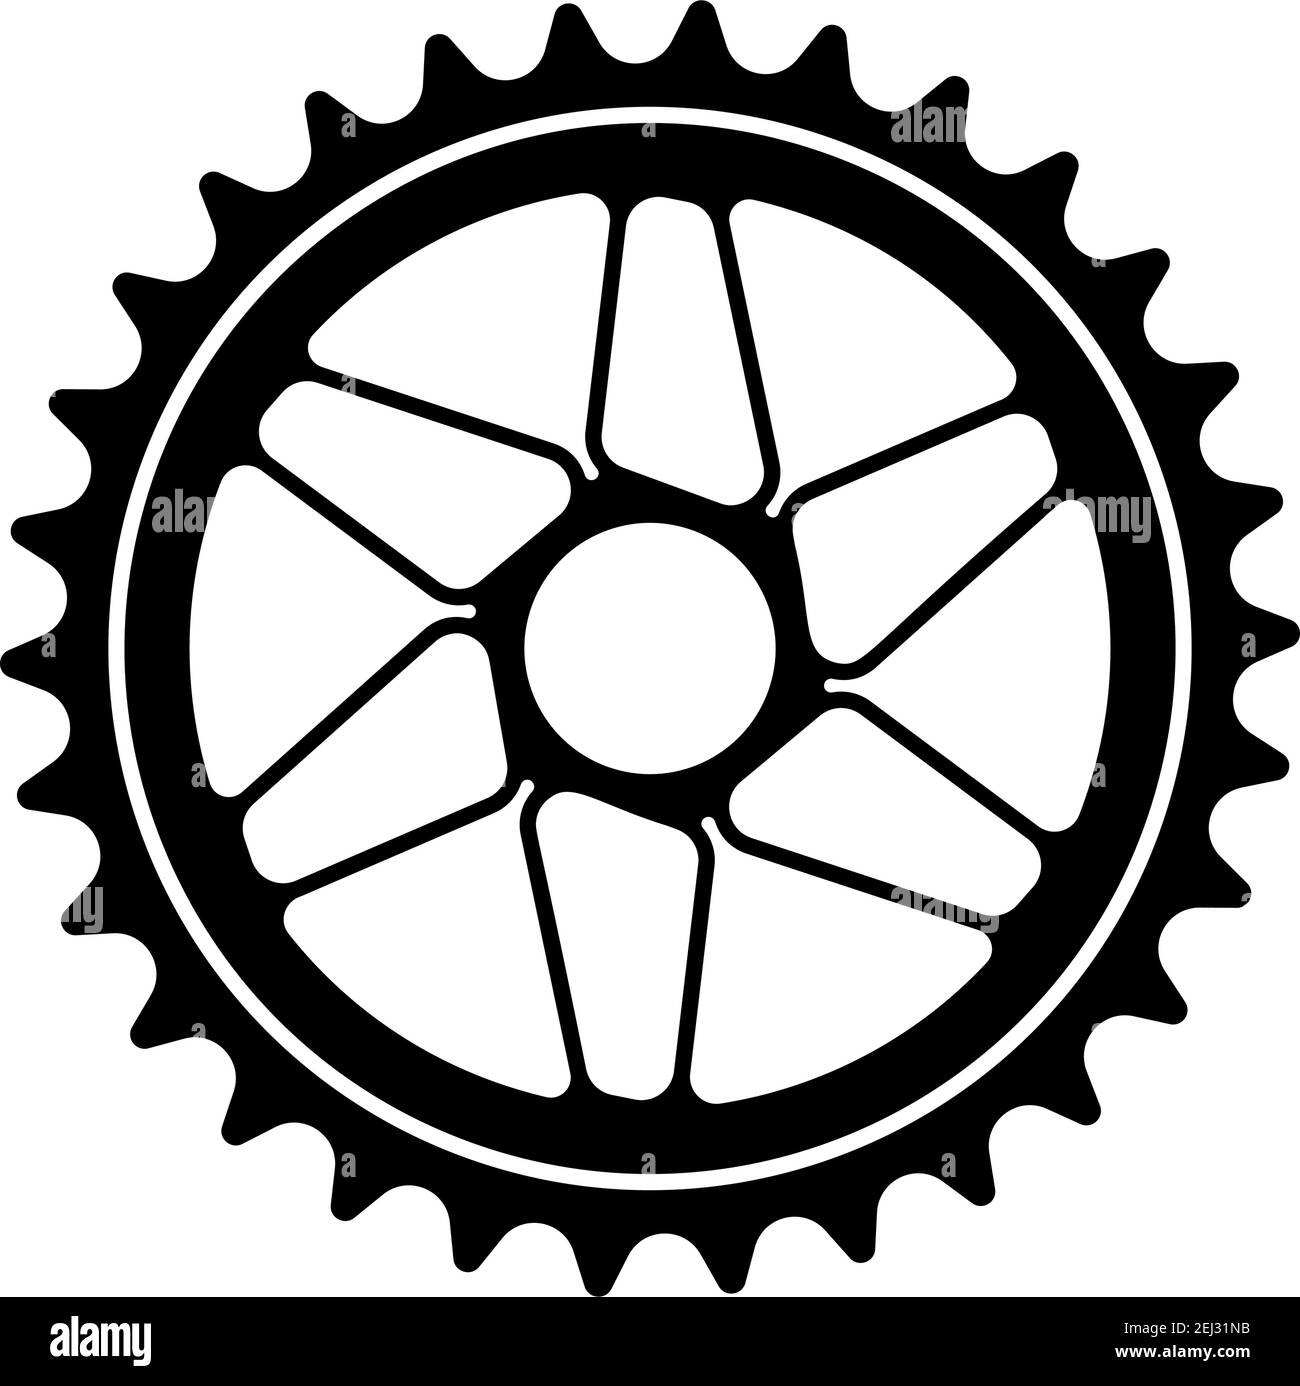 Bike Gear Star Icon. Black Stencil Design. Vector Illustration. Stock Vector